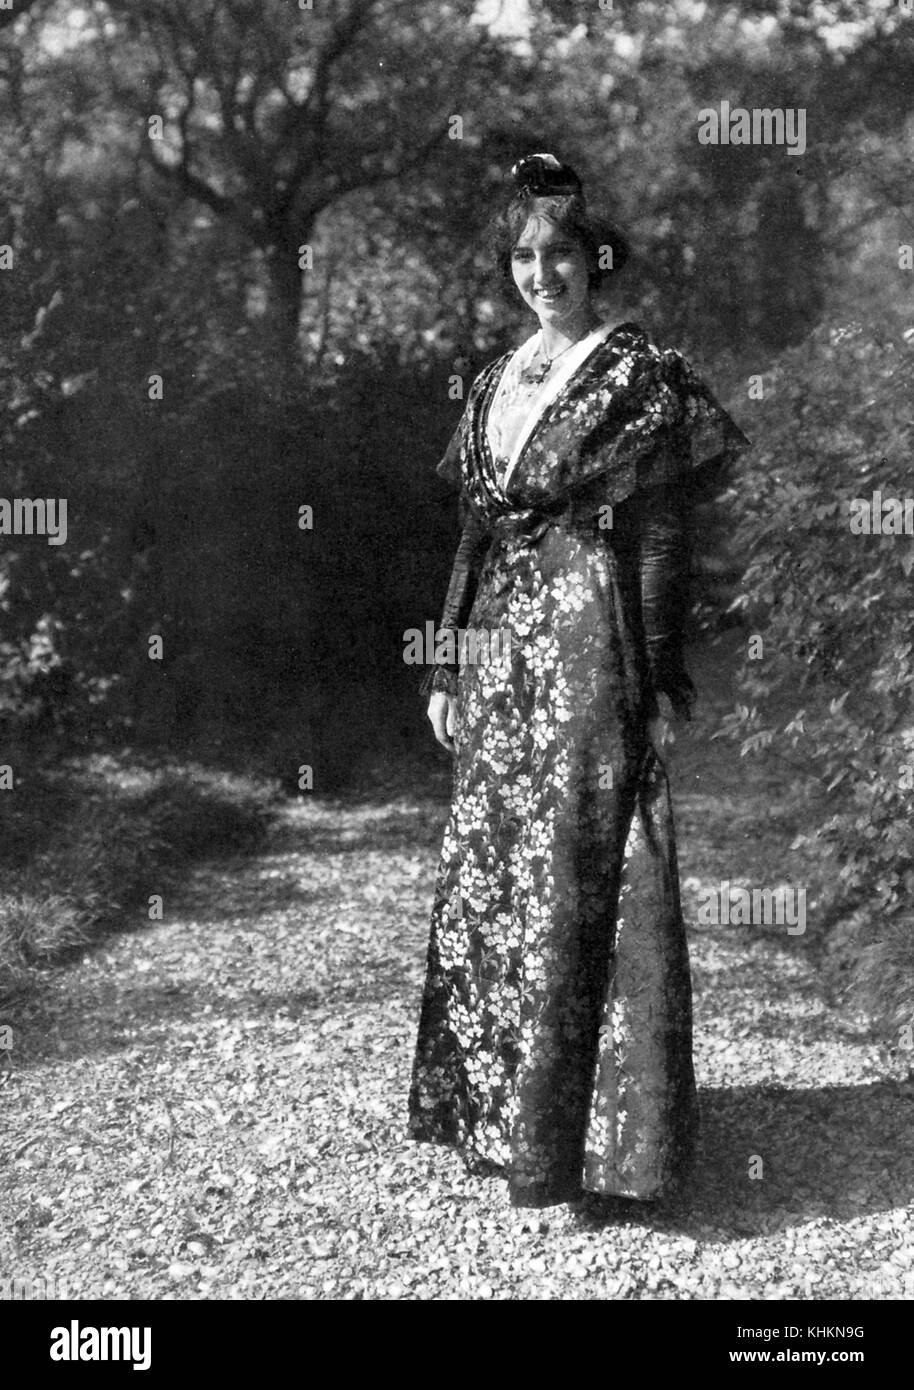 Portrait photographique complet d'une femme souriante, elle pose sur un chemin dans une zone boisée, elle porte une robe traditionnelle d'Arlesienne ou de femmes d'Arles, la robe est longueur du sol avec de longues manches et présente un imprimé fleuri qui brille dans la lumière du soleil, Camargue, France, juillet 1922. Banque D'Images